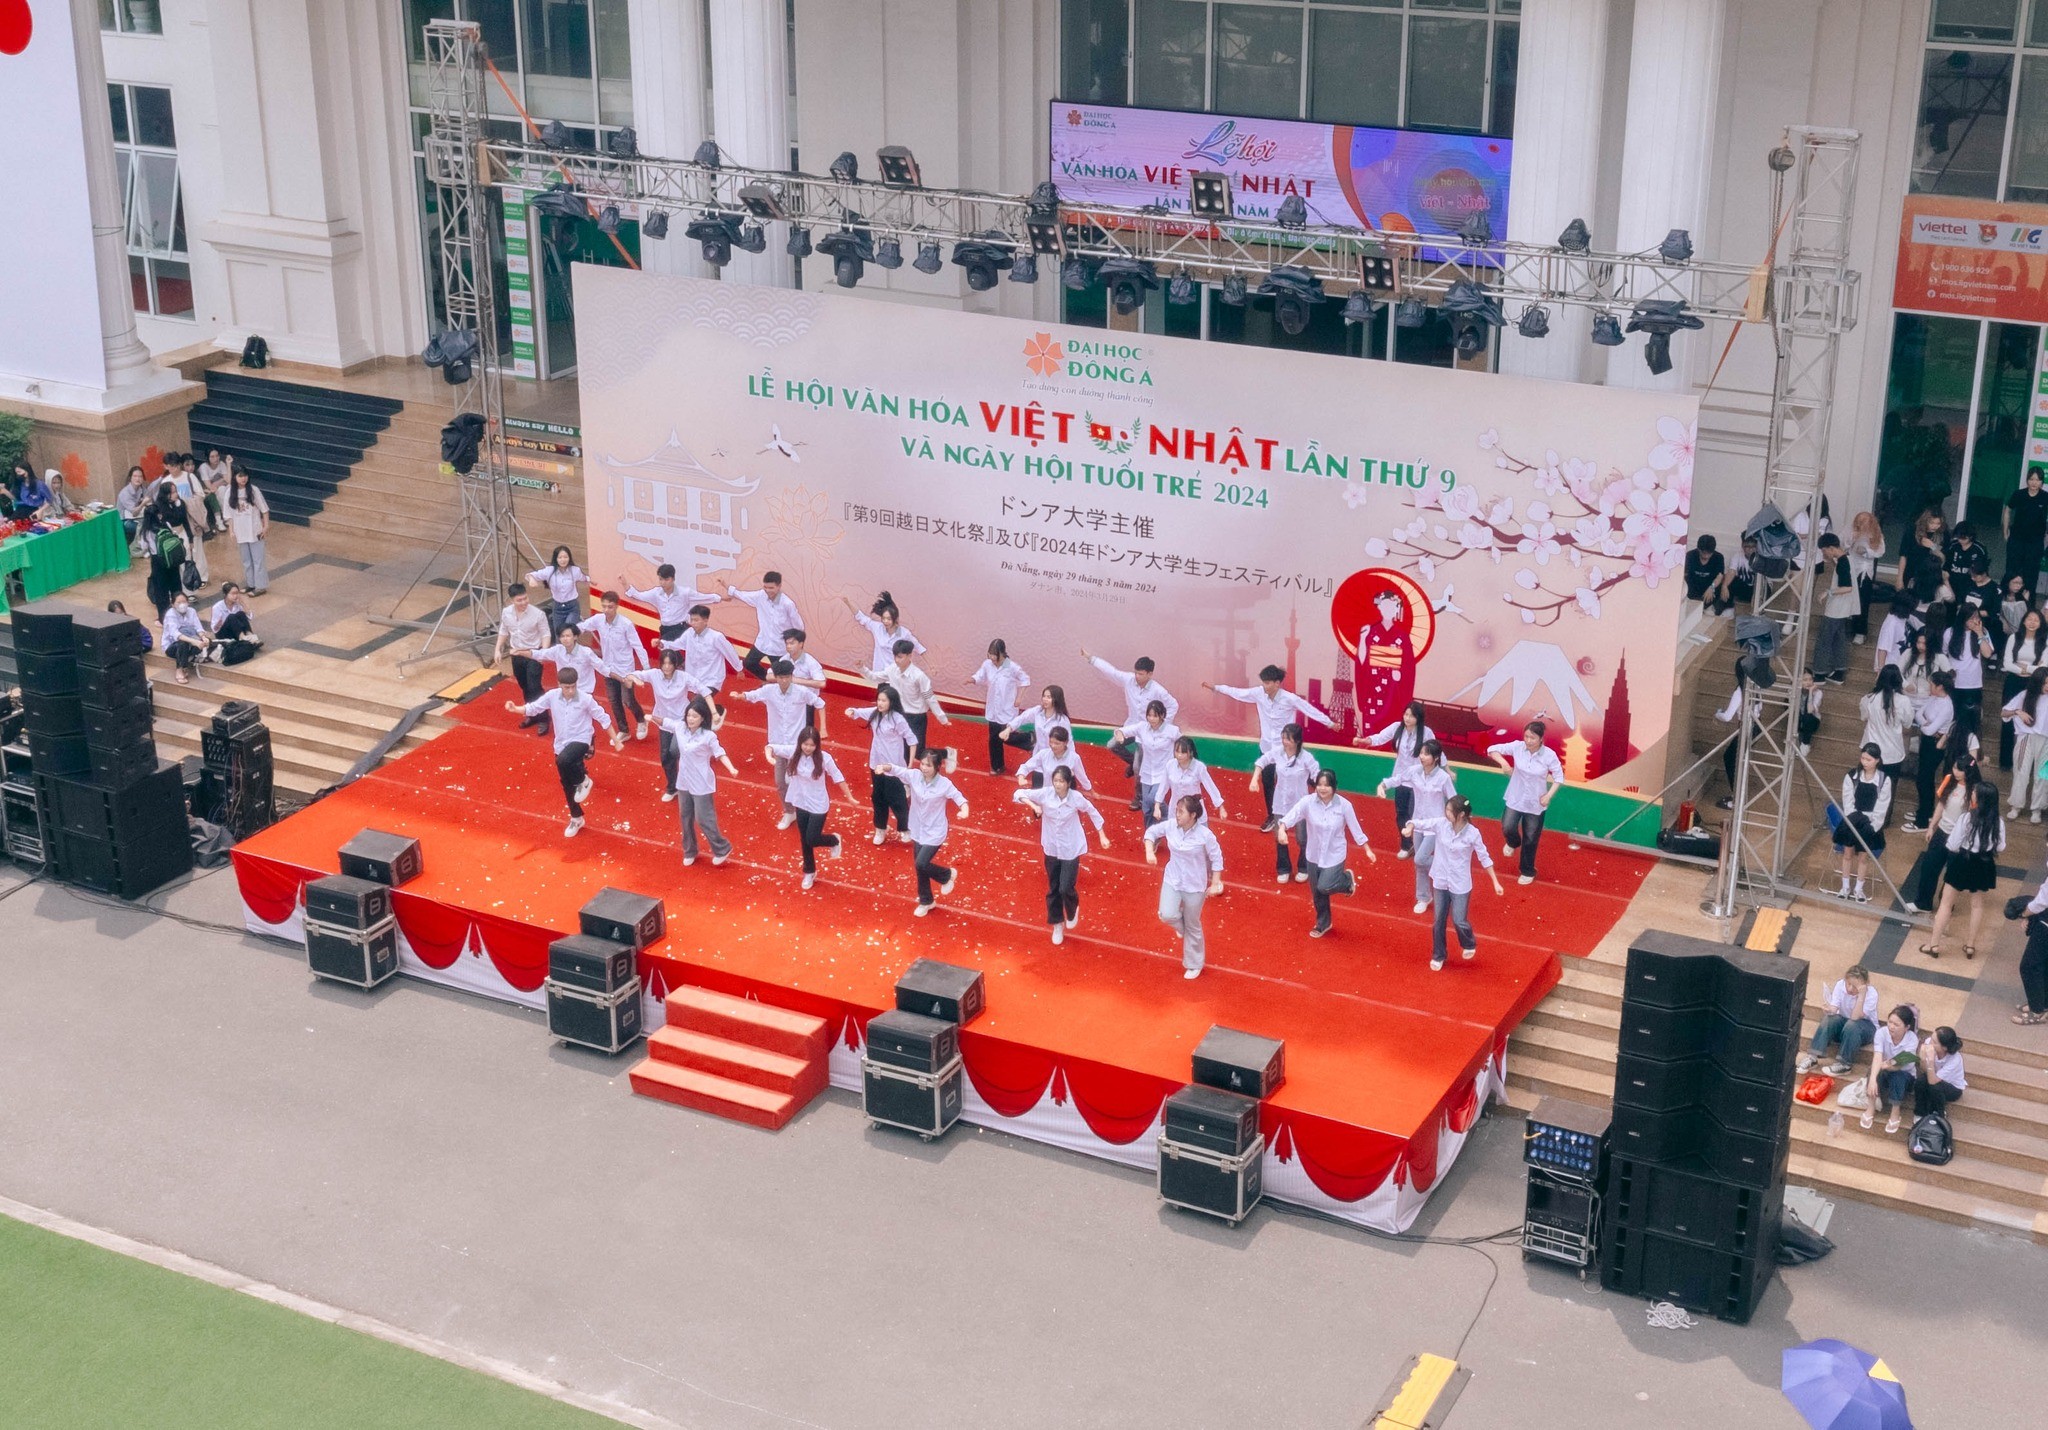 Lễ hội văn hóa Việt – Nhật lần thứ 9 được tổ chức tại Đại học Đông Á. (Ảnh: donga.edu.vn)